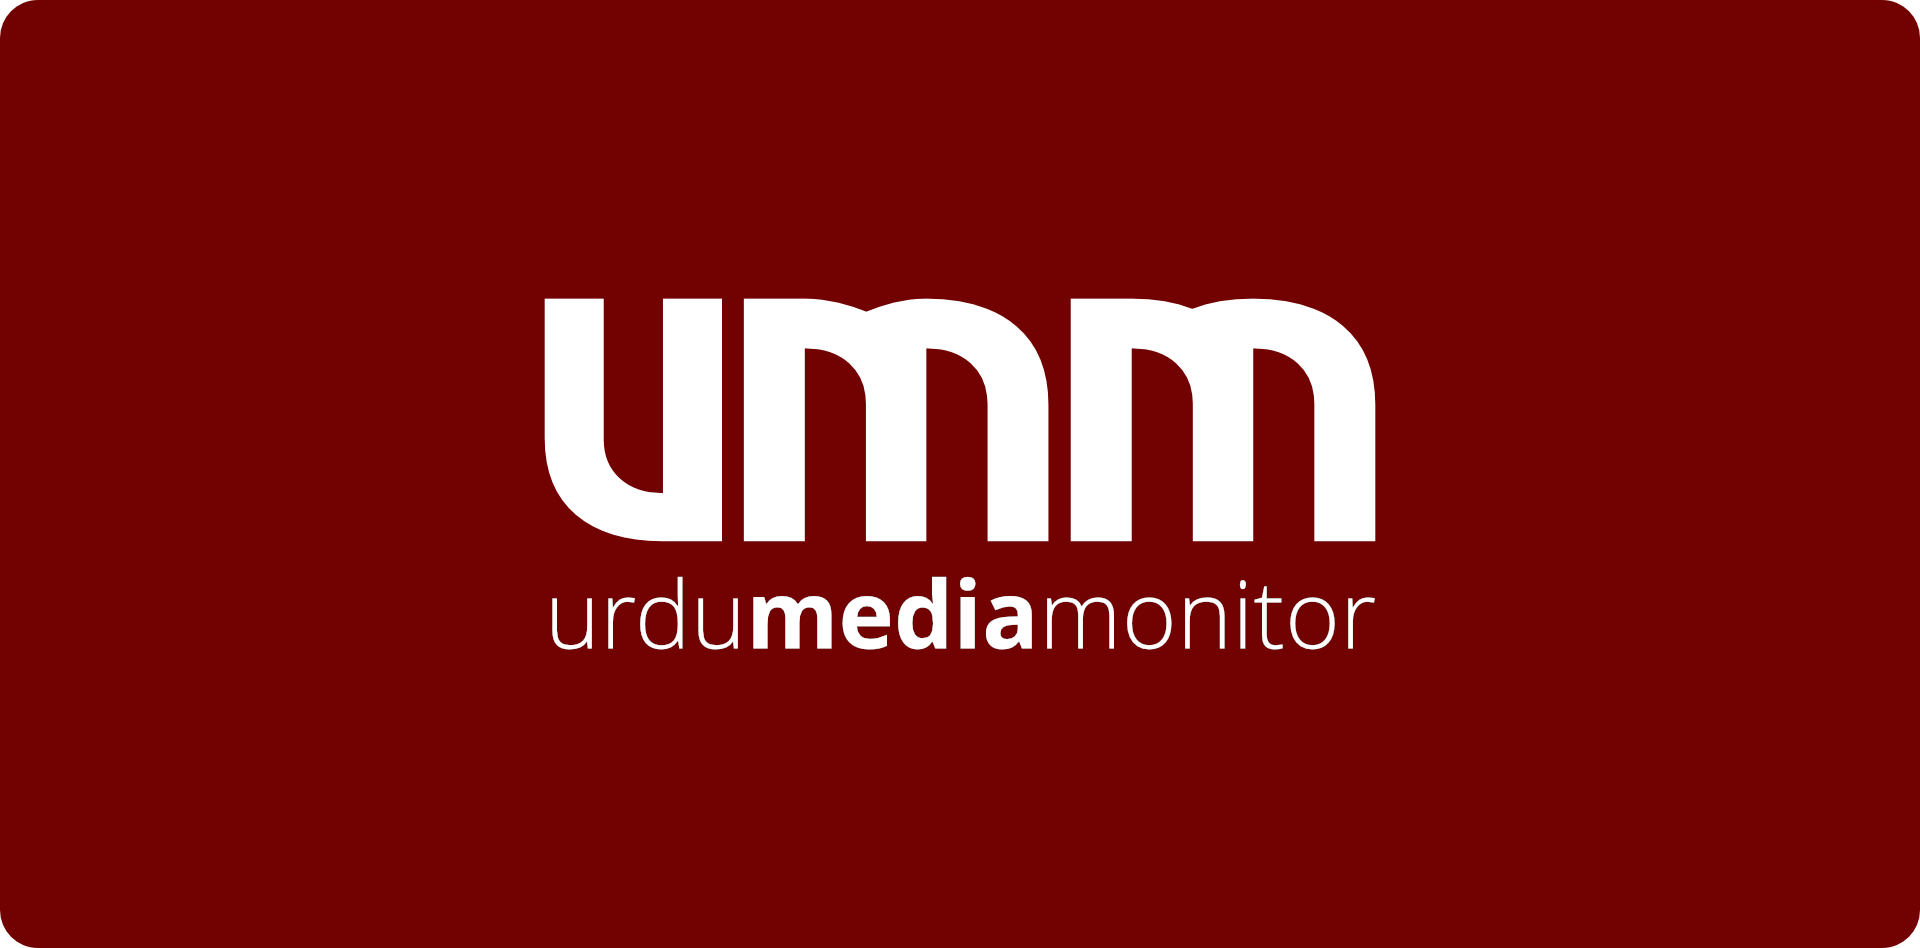 New Urdu Media Monitor Logo